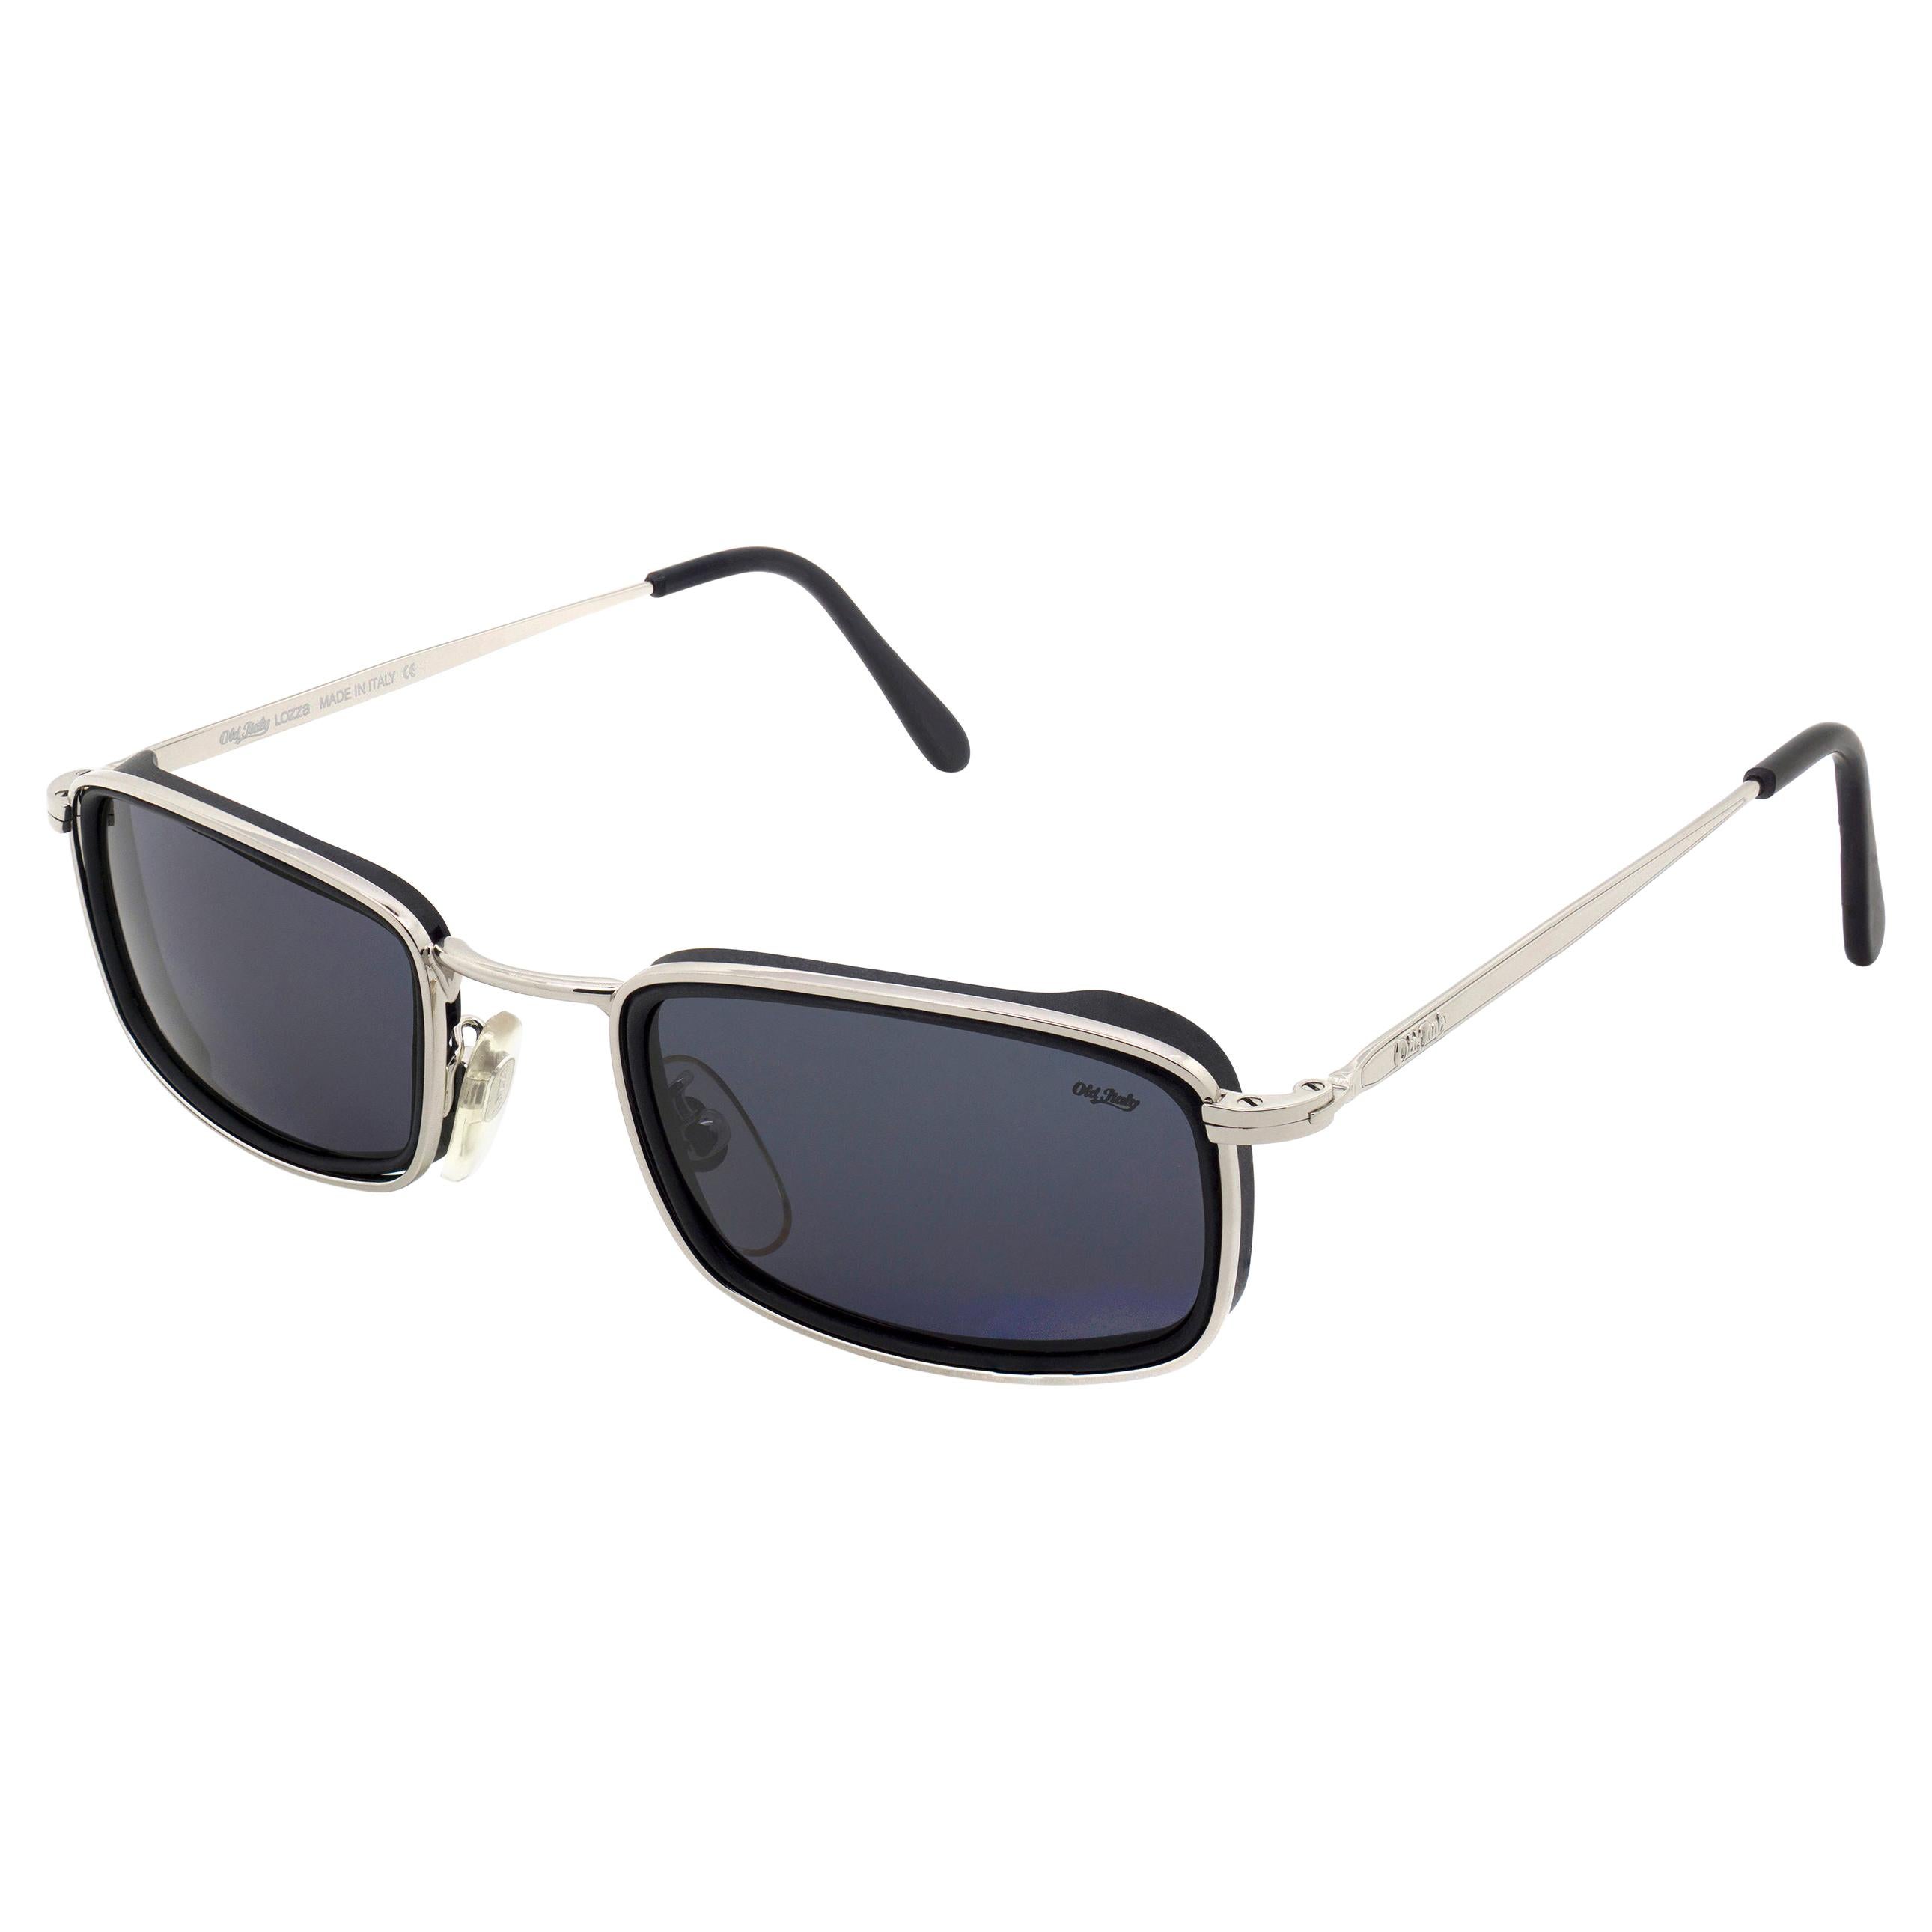 LOZZA~ZILO 62 Occhiale sole NUOVO vintage MADE ITALY sunglasses sonnenbrille